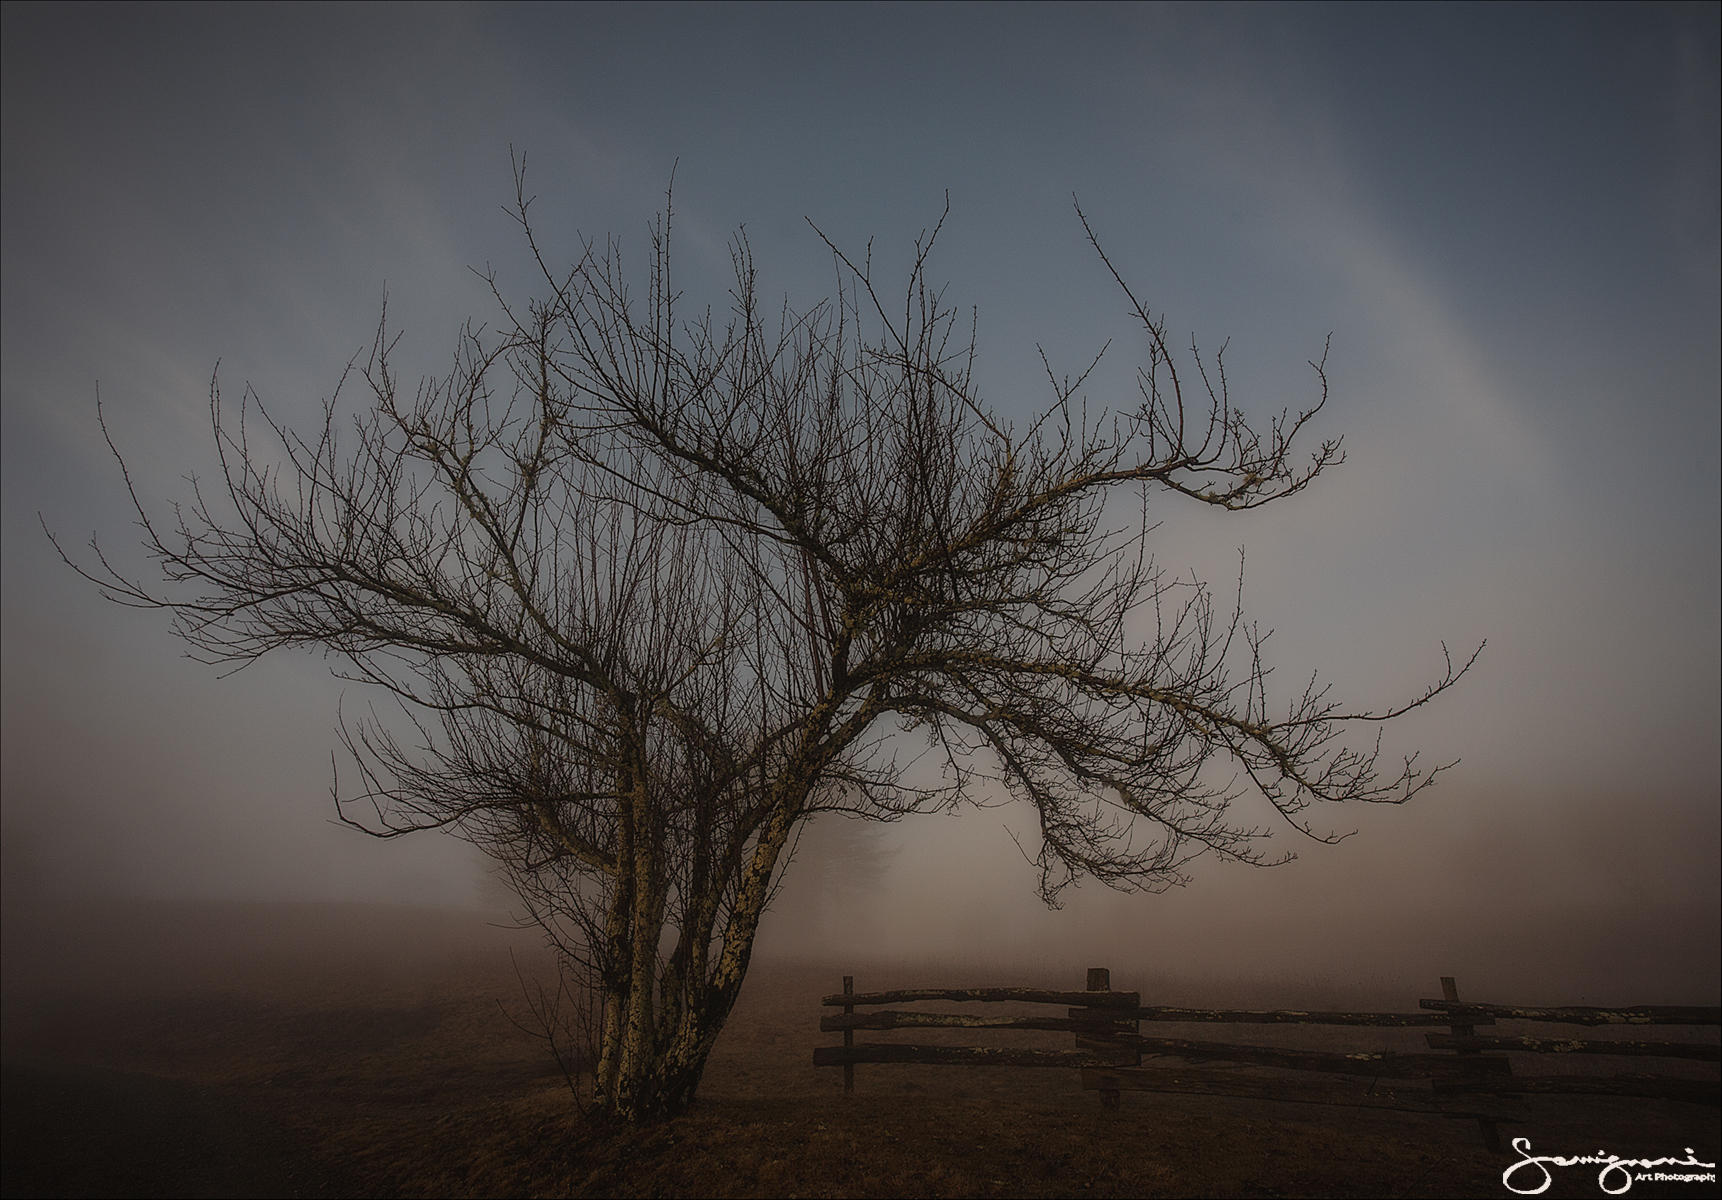 Lonely Tree-
Catoloochee, NC